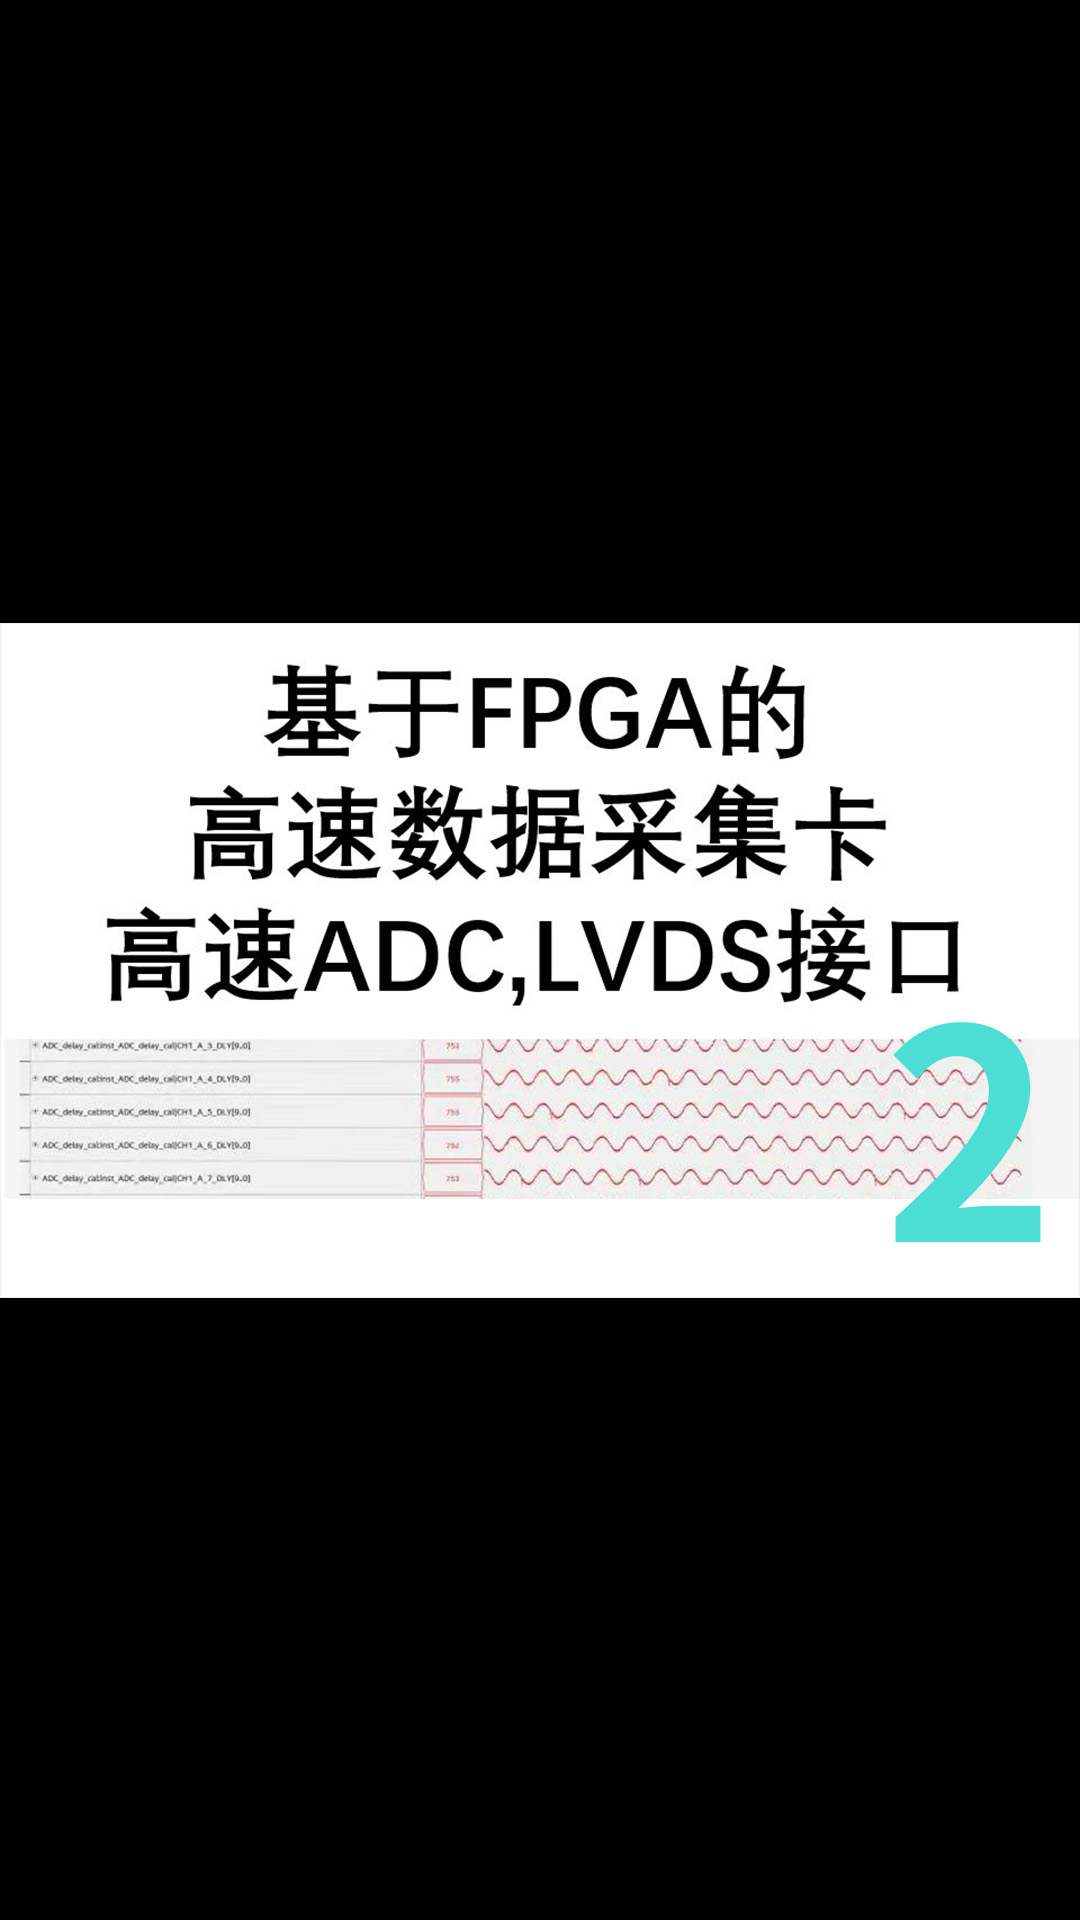 基于FPGA的高速数据采集卡,LVDS接口-2